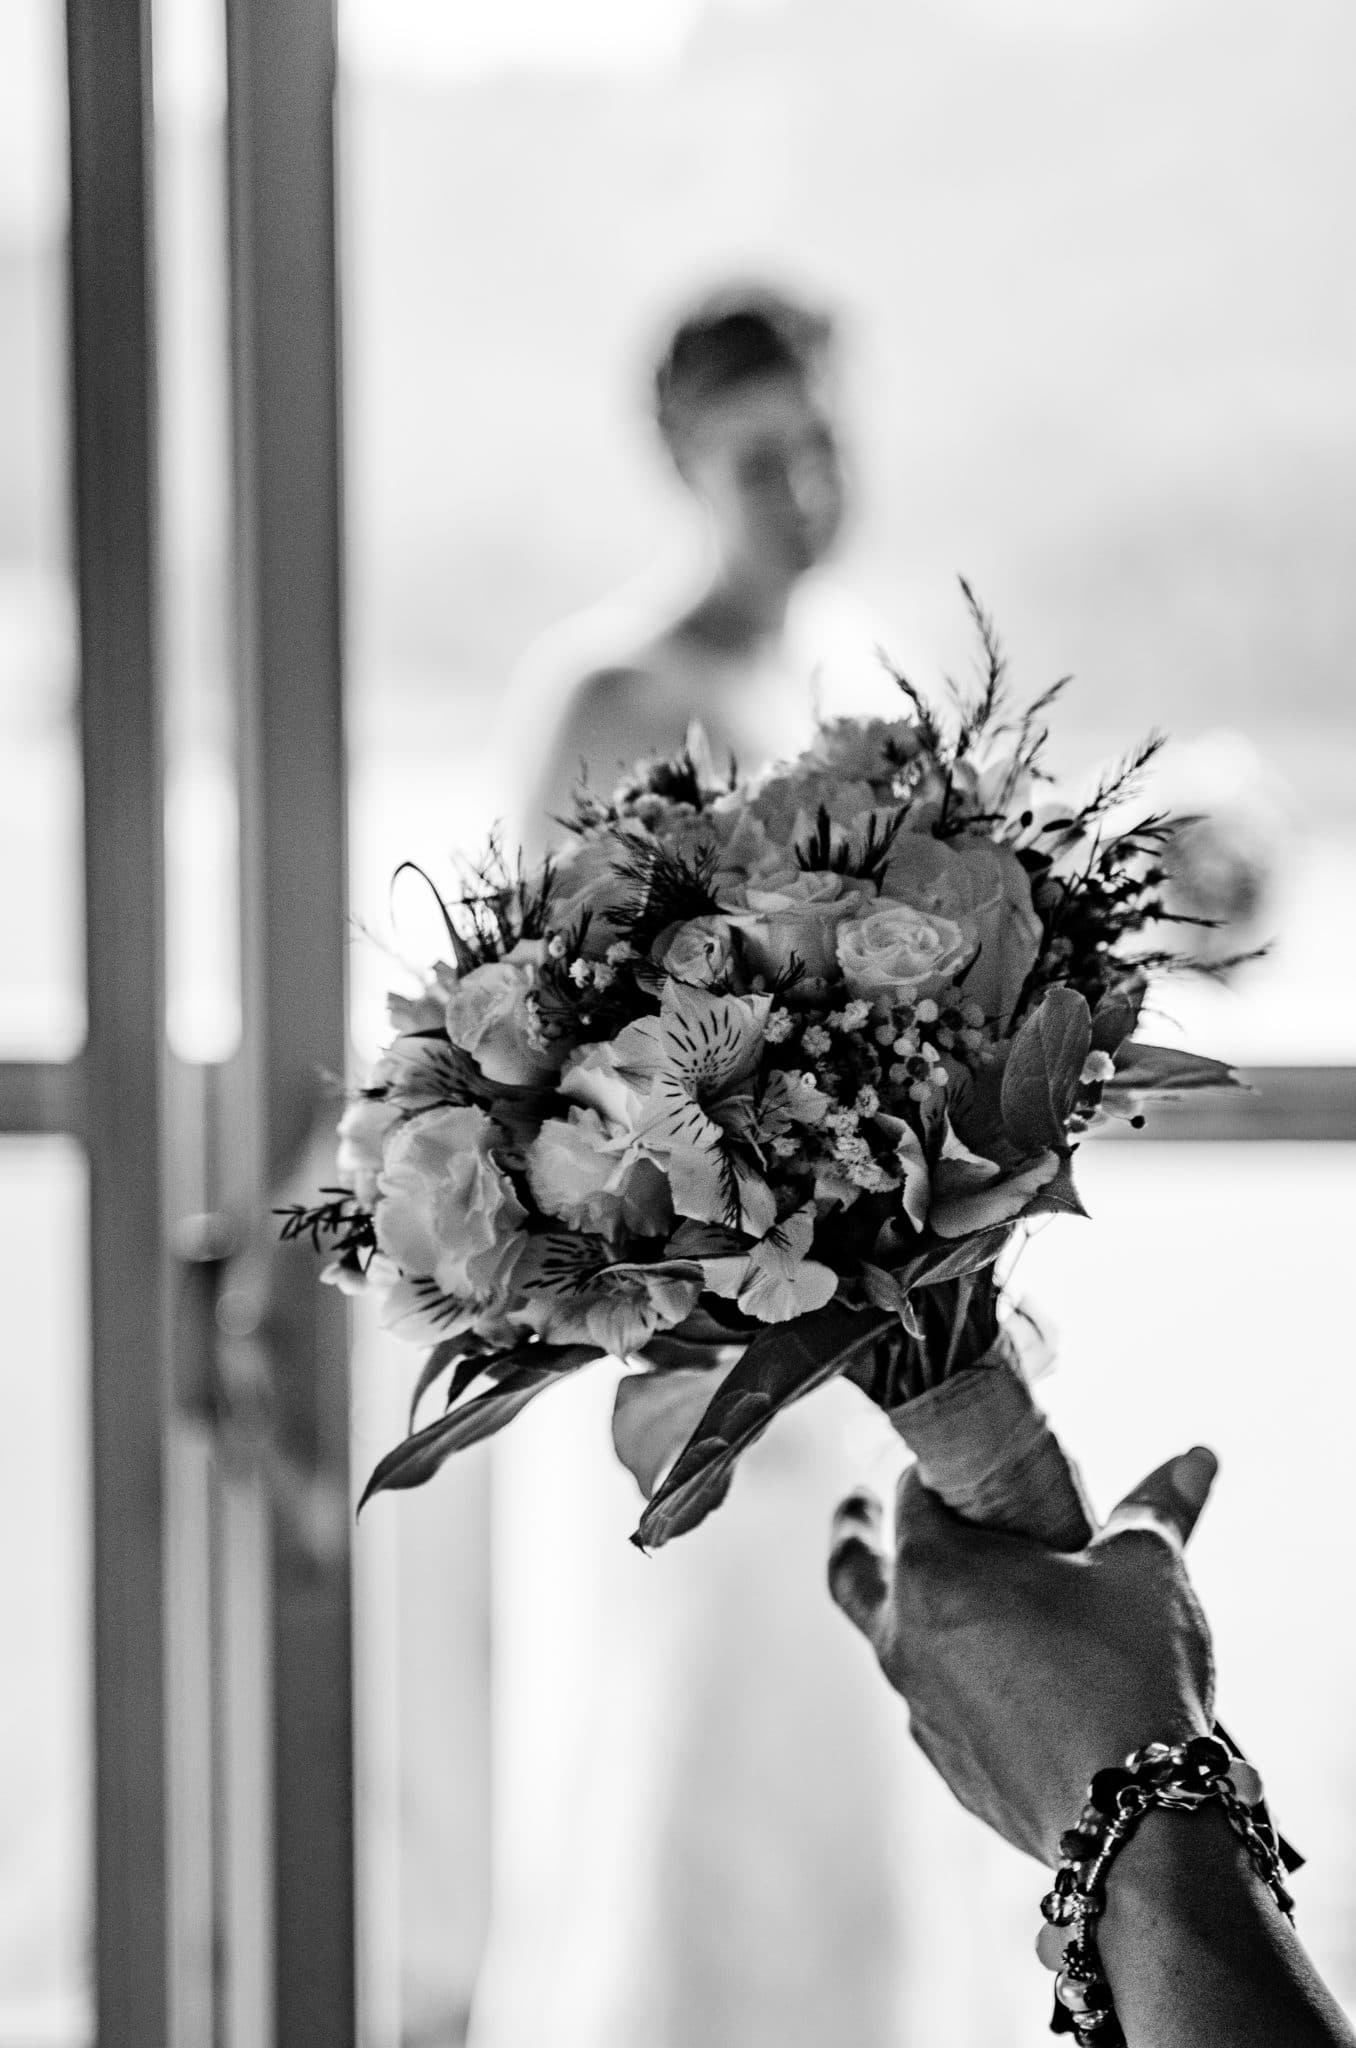 the bride's bouquet